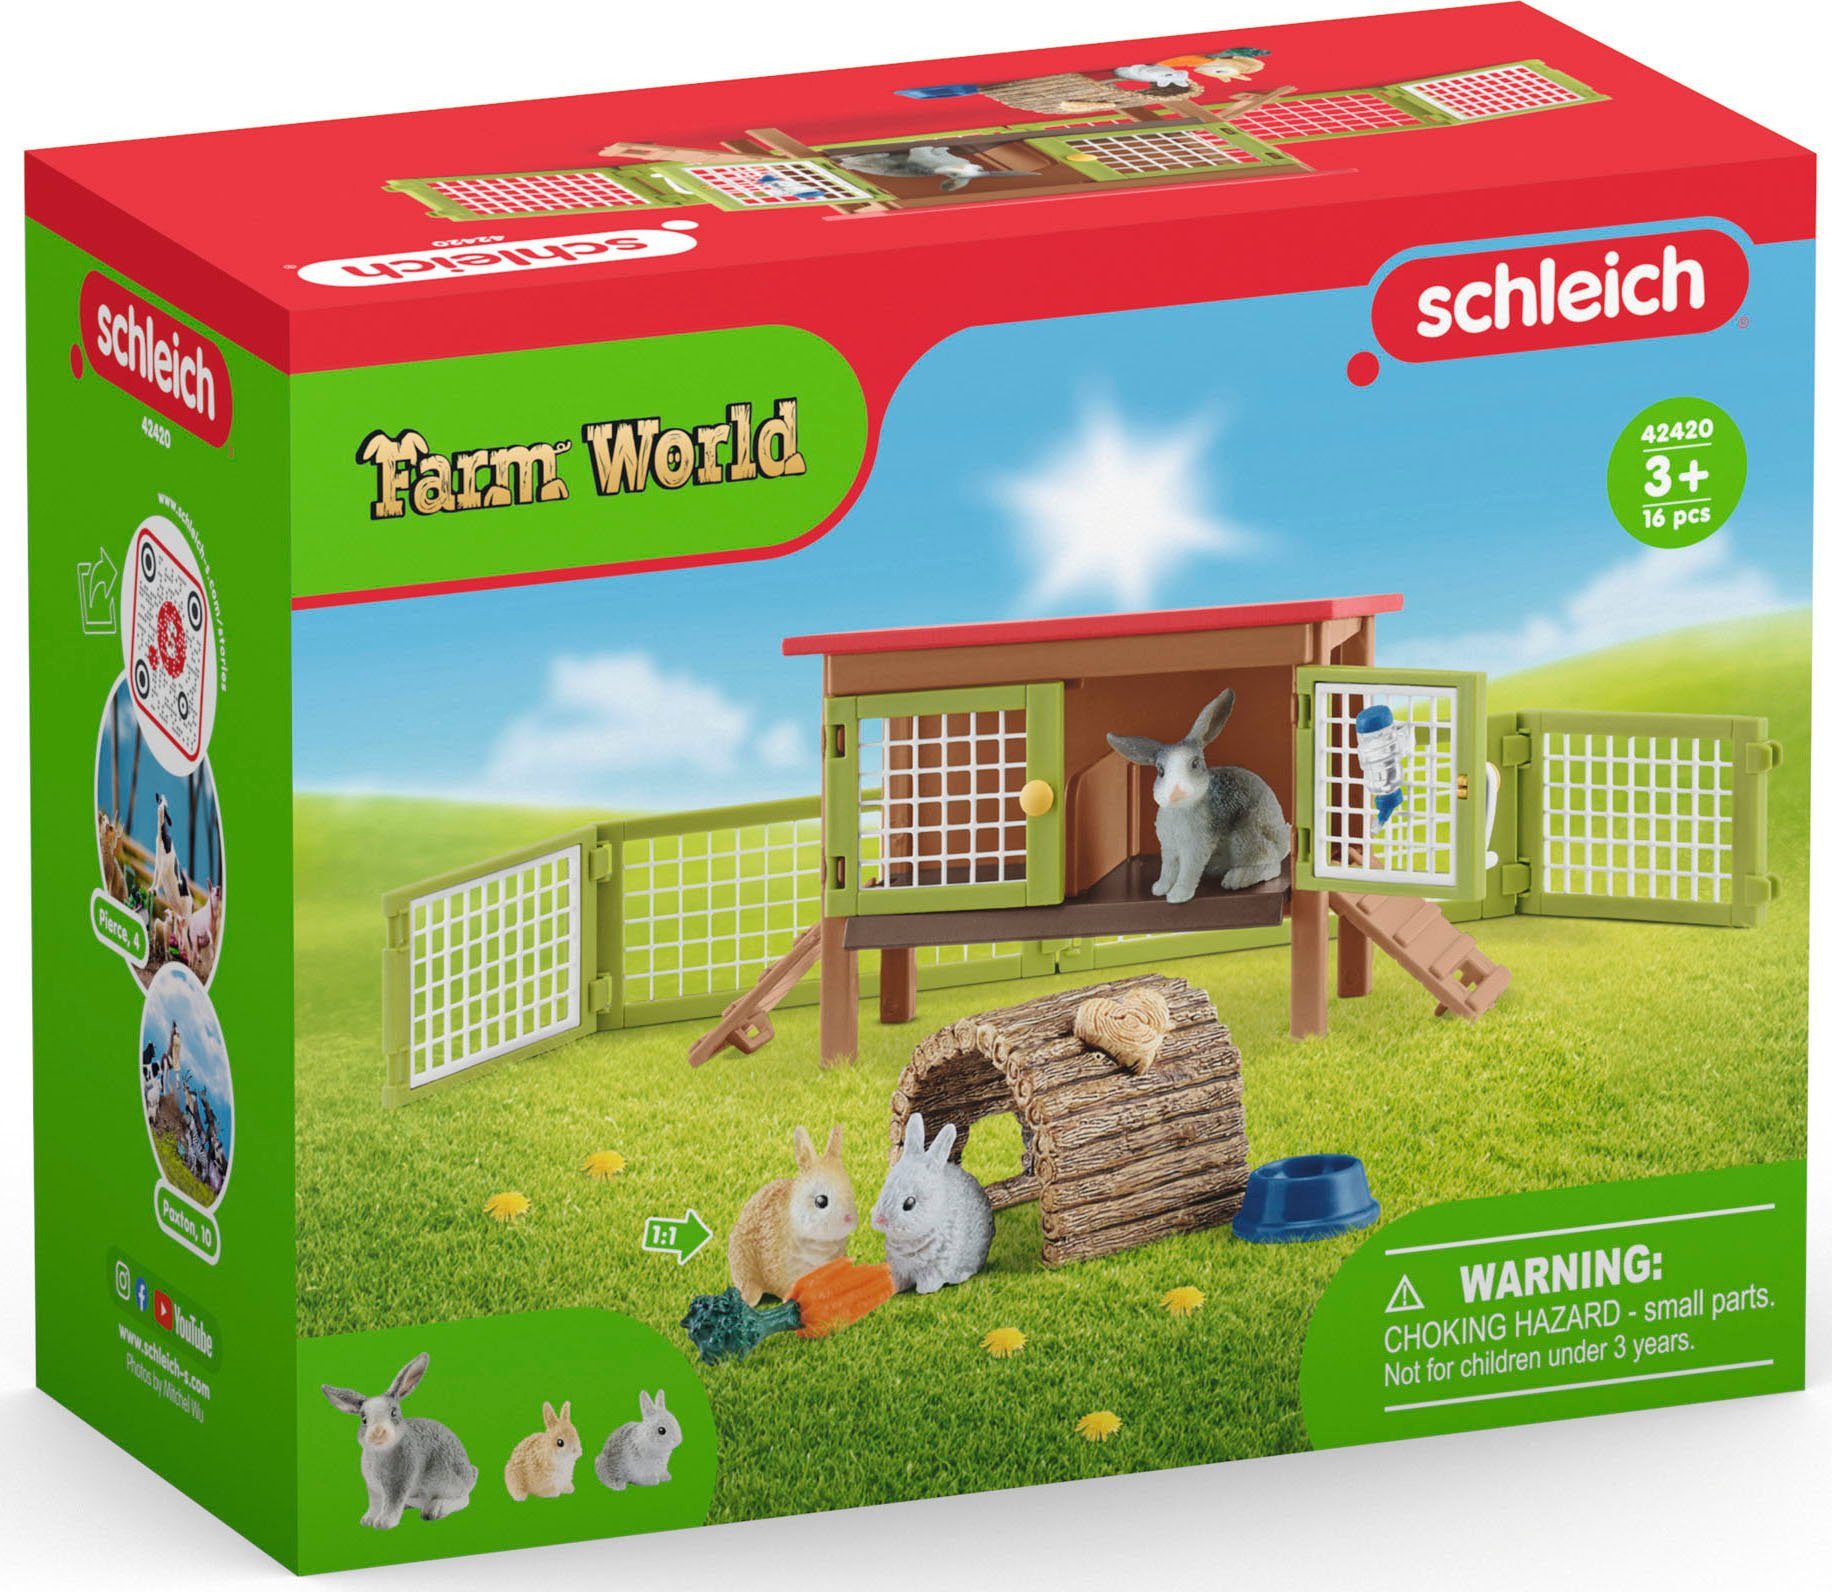 Schleich® Kaninchenstall WORLD, Spielwelt (42420) FARM